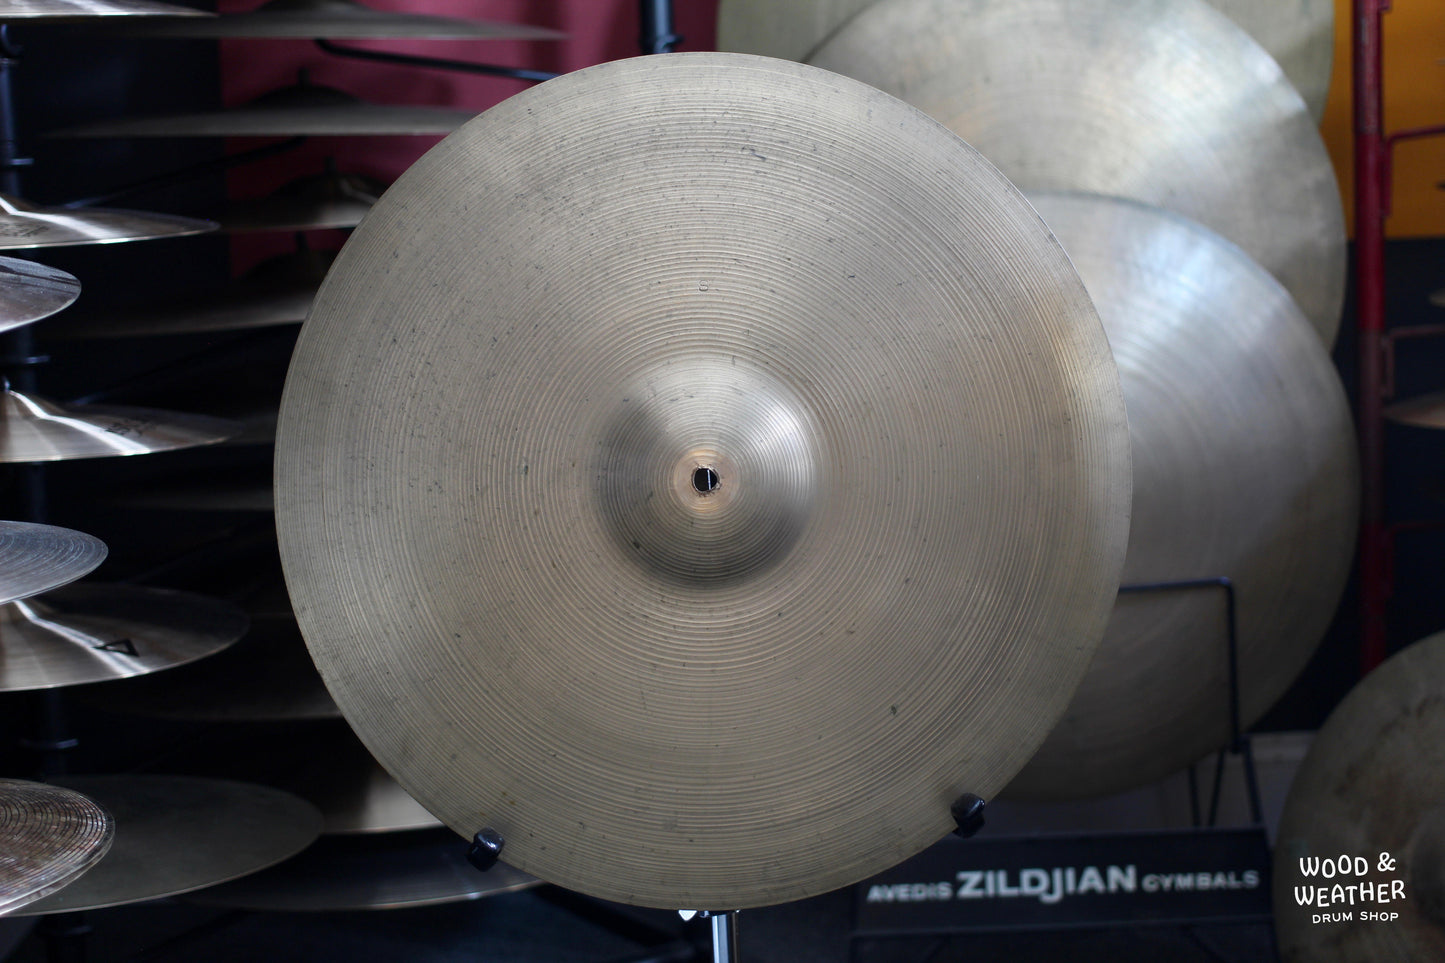 1960s A. Zildjian 20" Ride Cymbal 2340g